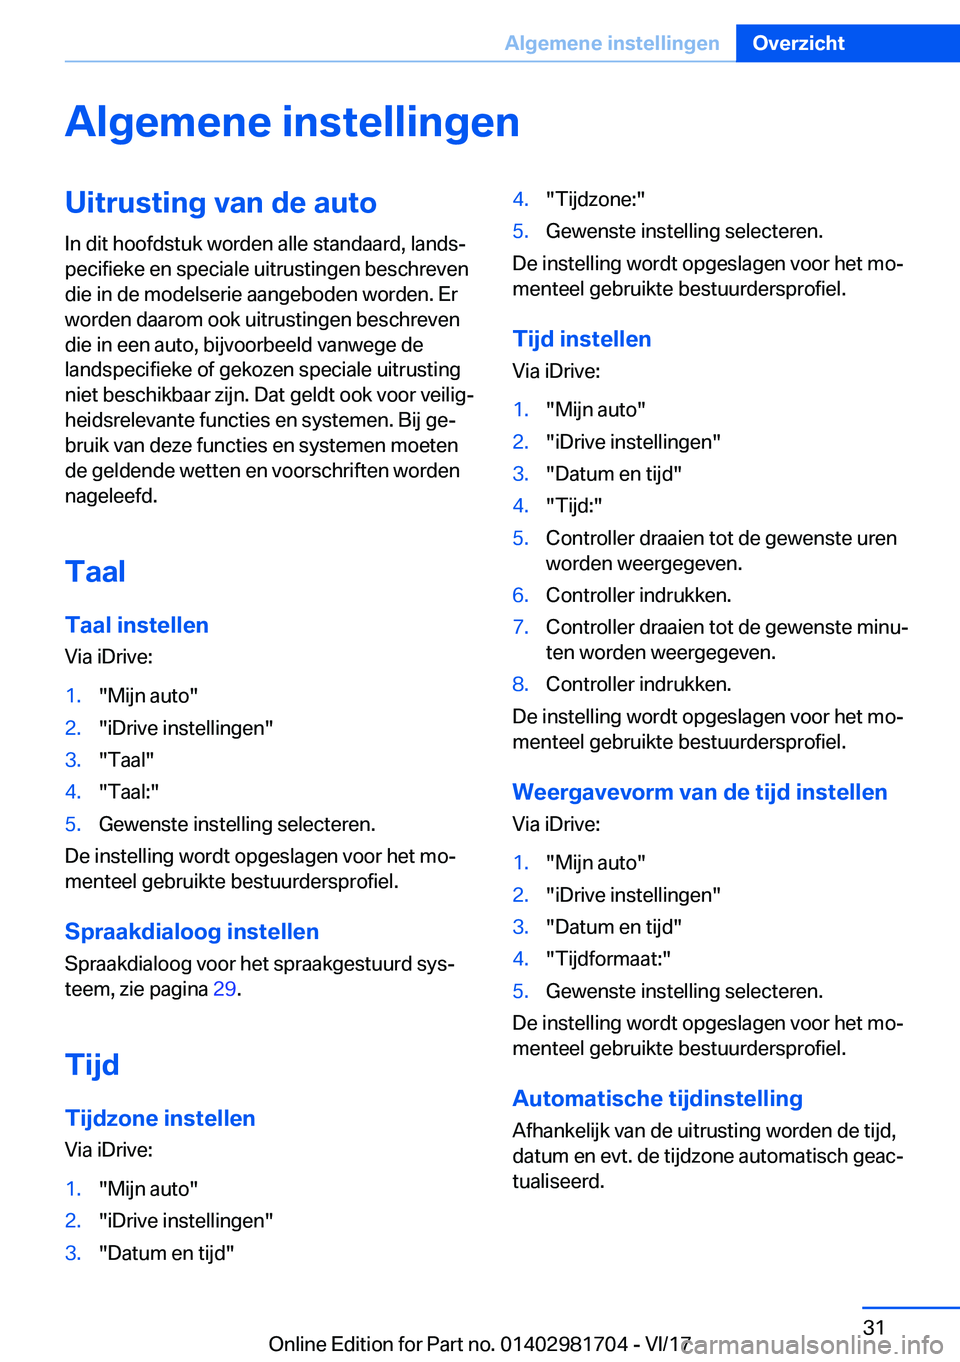 BMW M4 2018  Instructieboekjes (in Dutch) �A�l�g�e�m�e�n�e��i�n�s�t�e�l�l�i�n�g�e�n�U�i�t�r�u�s�t�i�n�g��v�a�n��d�e��a�u�t�o
�I�n� �d�i�t� �h�o�o�f�d�s�t�u�k� �w�o�r�d�e�n� �a�l�l�e� �s�t�a�n�d�a�a�r�d�,� �l�a�n�d�sj
�p�e�c�i�f�i�e�k�e� 